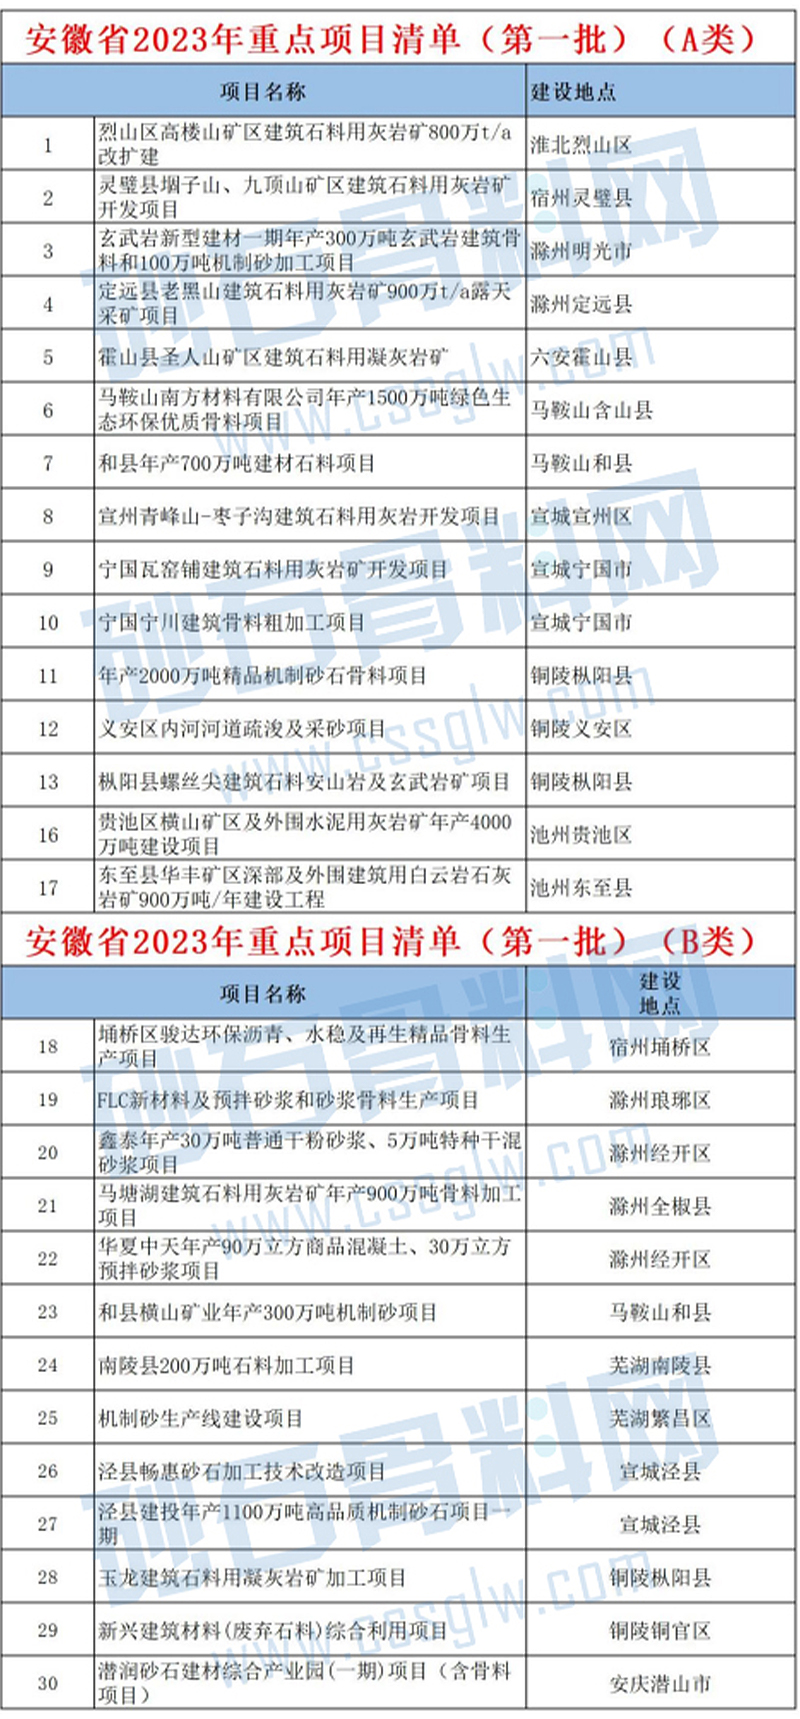 安徽省2023年重点项目清单（第一批）